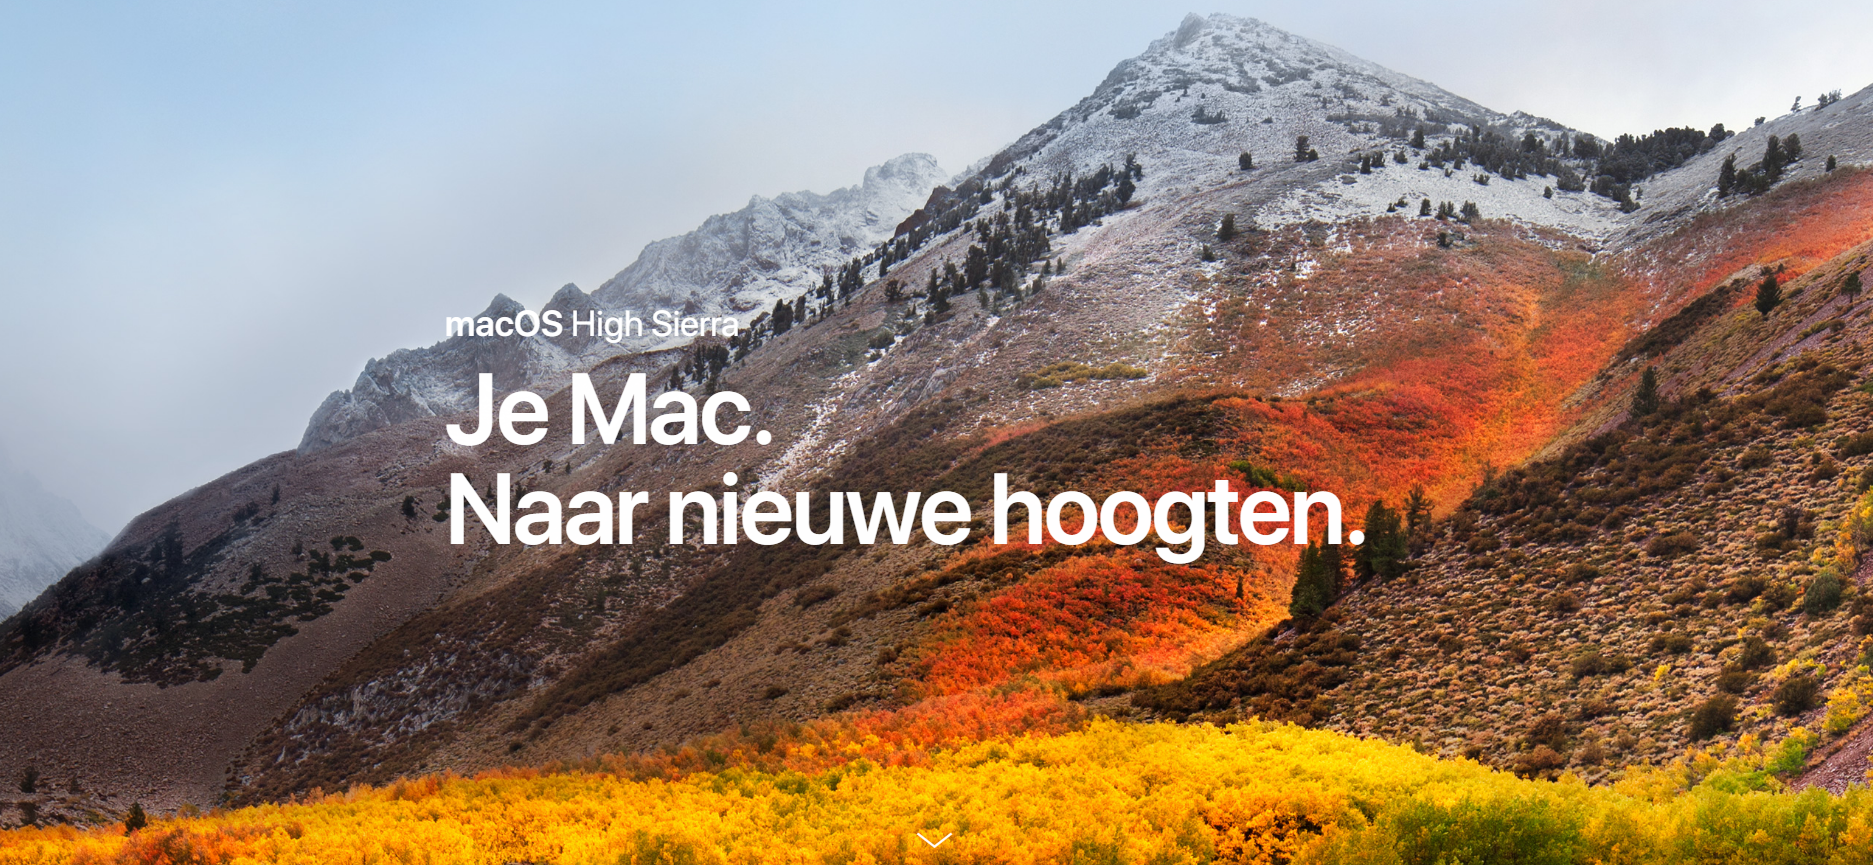 macOS High Sierra vandaag beschikbaar